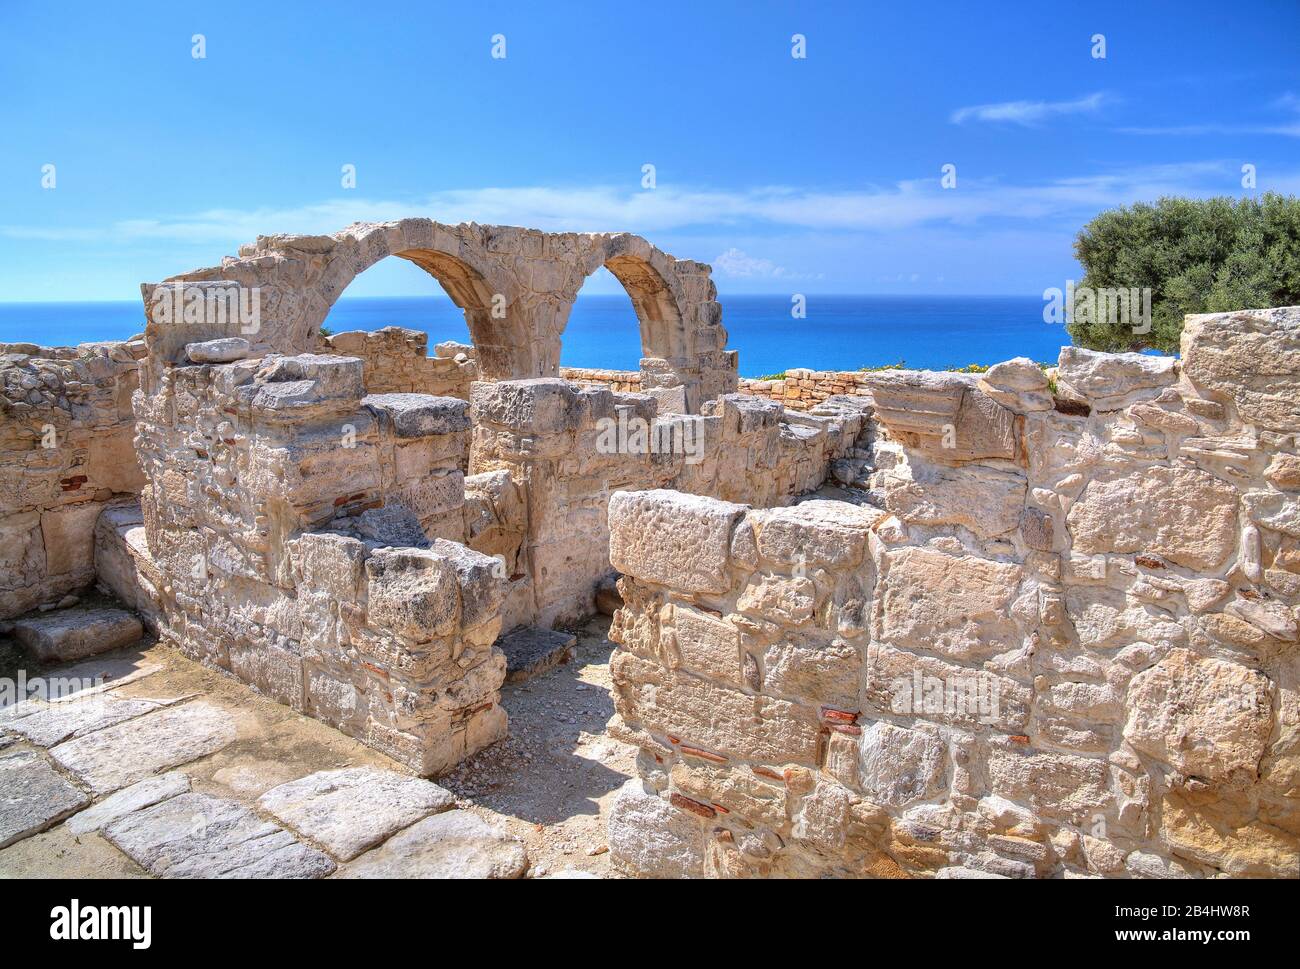 Basilica paleocristiana sopra la scogliera nell'antico sito archeologico di Kourion vicino a Limassol, costa mediterranea, Cipro Foto Stock